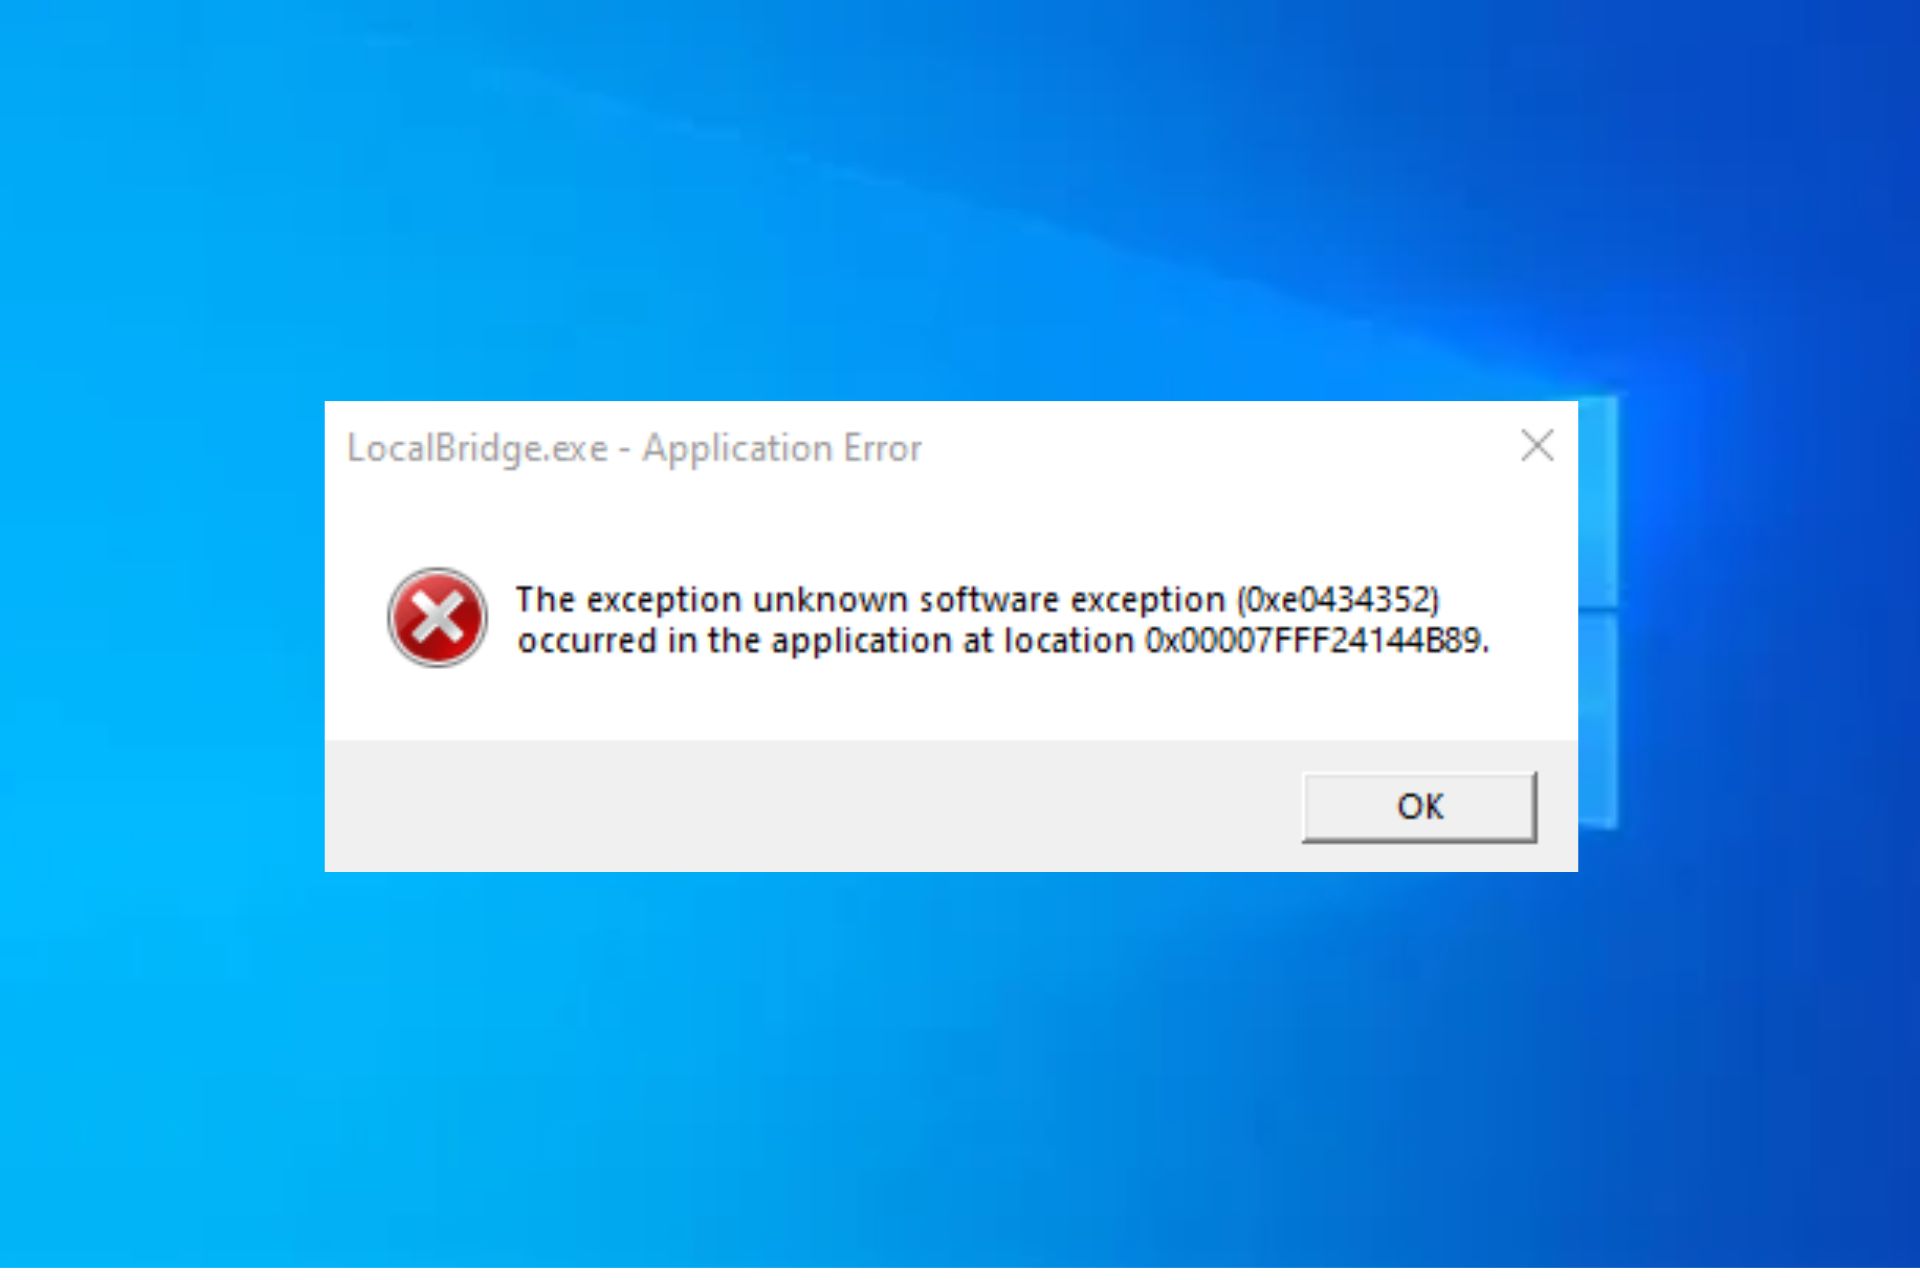 How to fix localbridge.exe application error on Windows PC